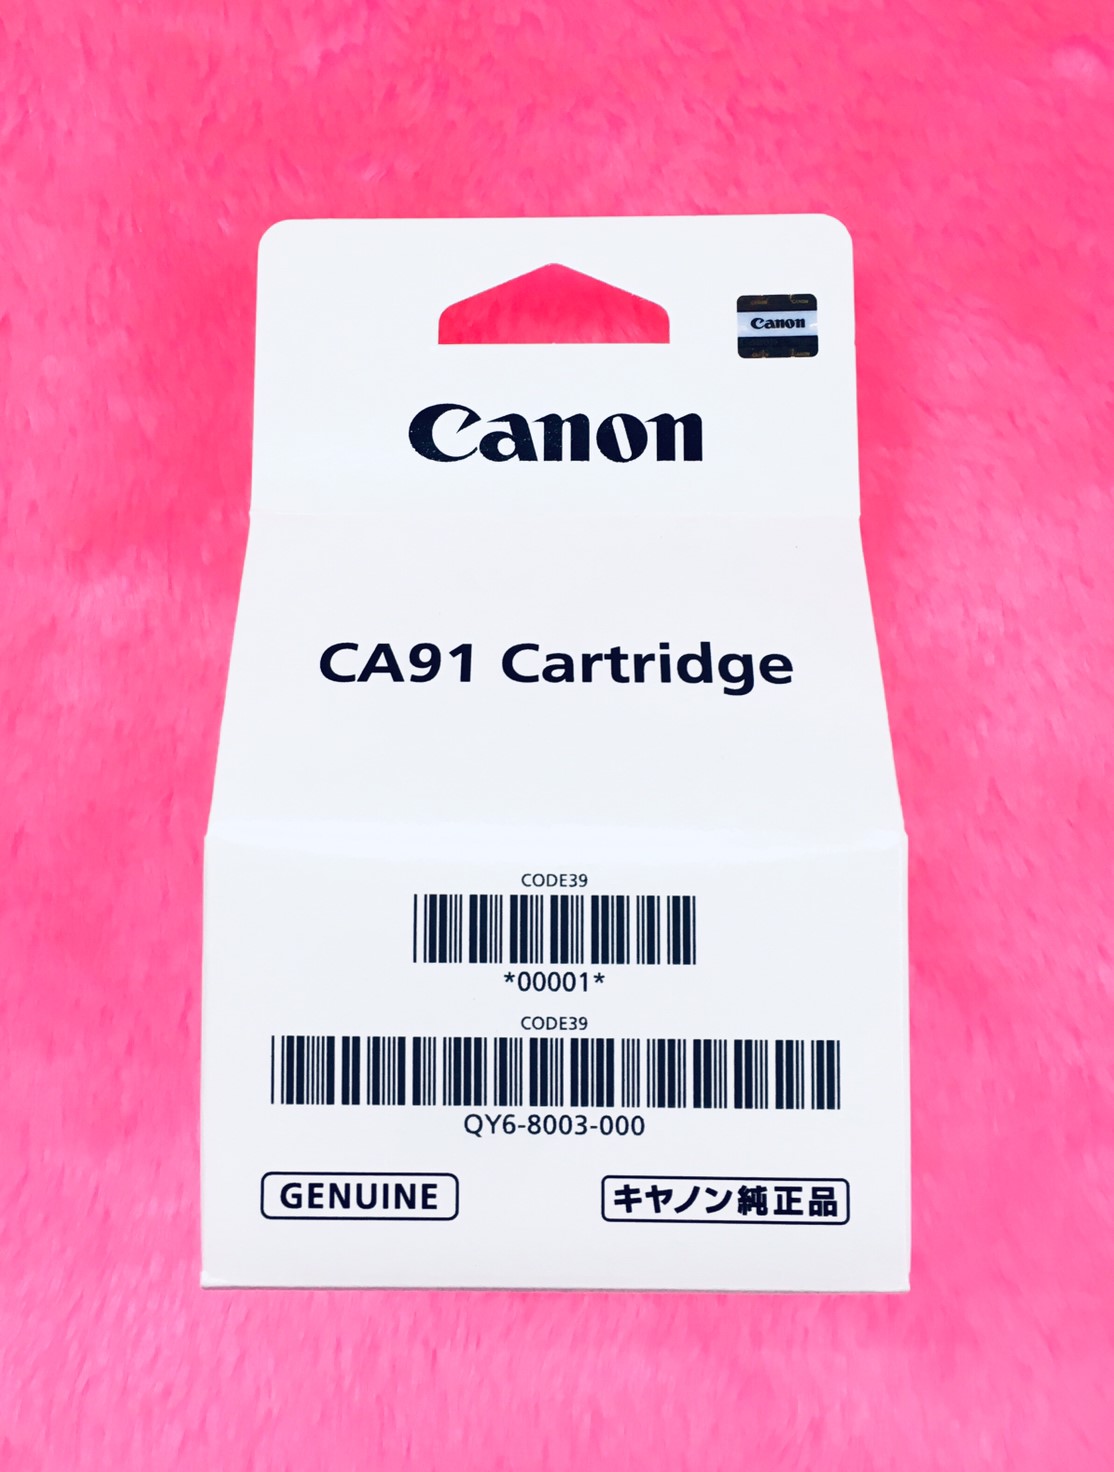 หัวพิมพ์ดำแท้ CA91 สำหรับรุ่น CANON G1000,G2000,G3000,G4000 และ CANON G1010,G2010,G3010,G4010